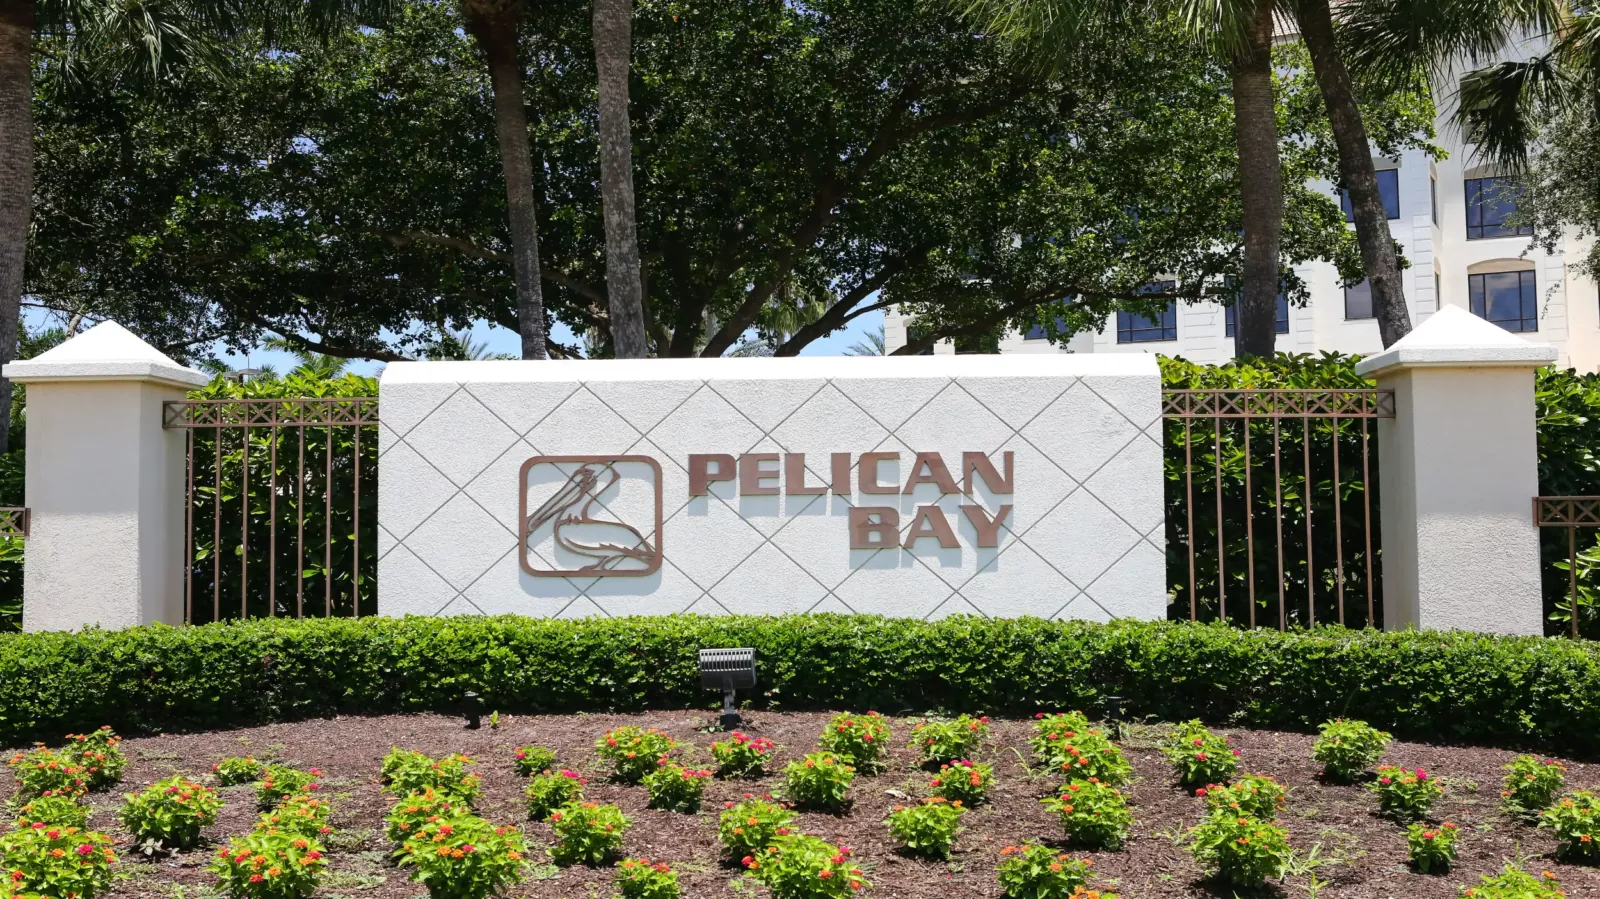 Pelican Bay Sign